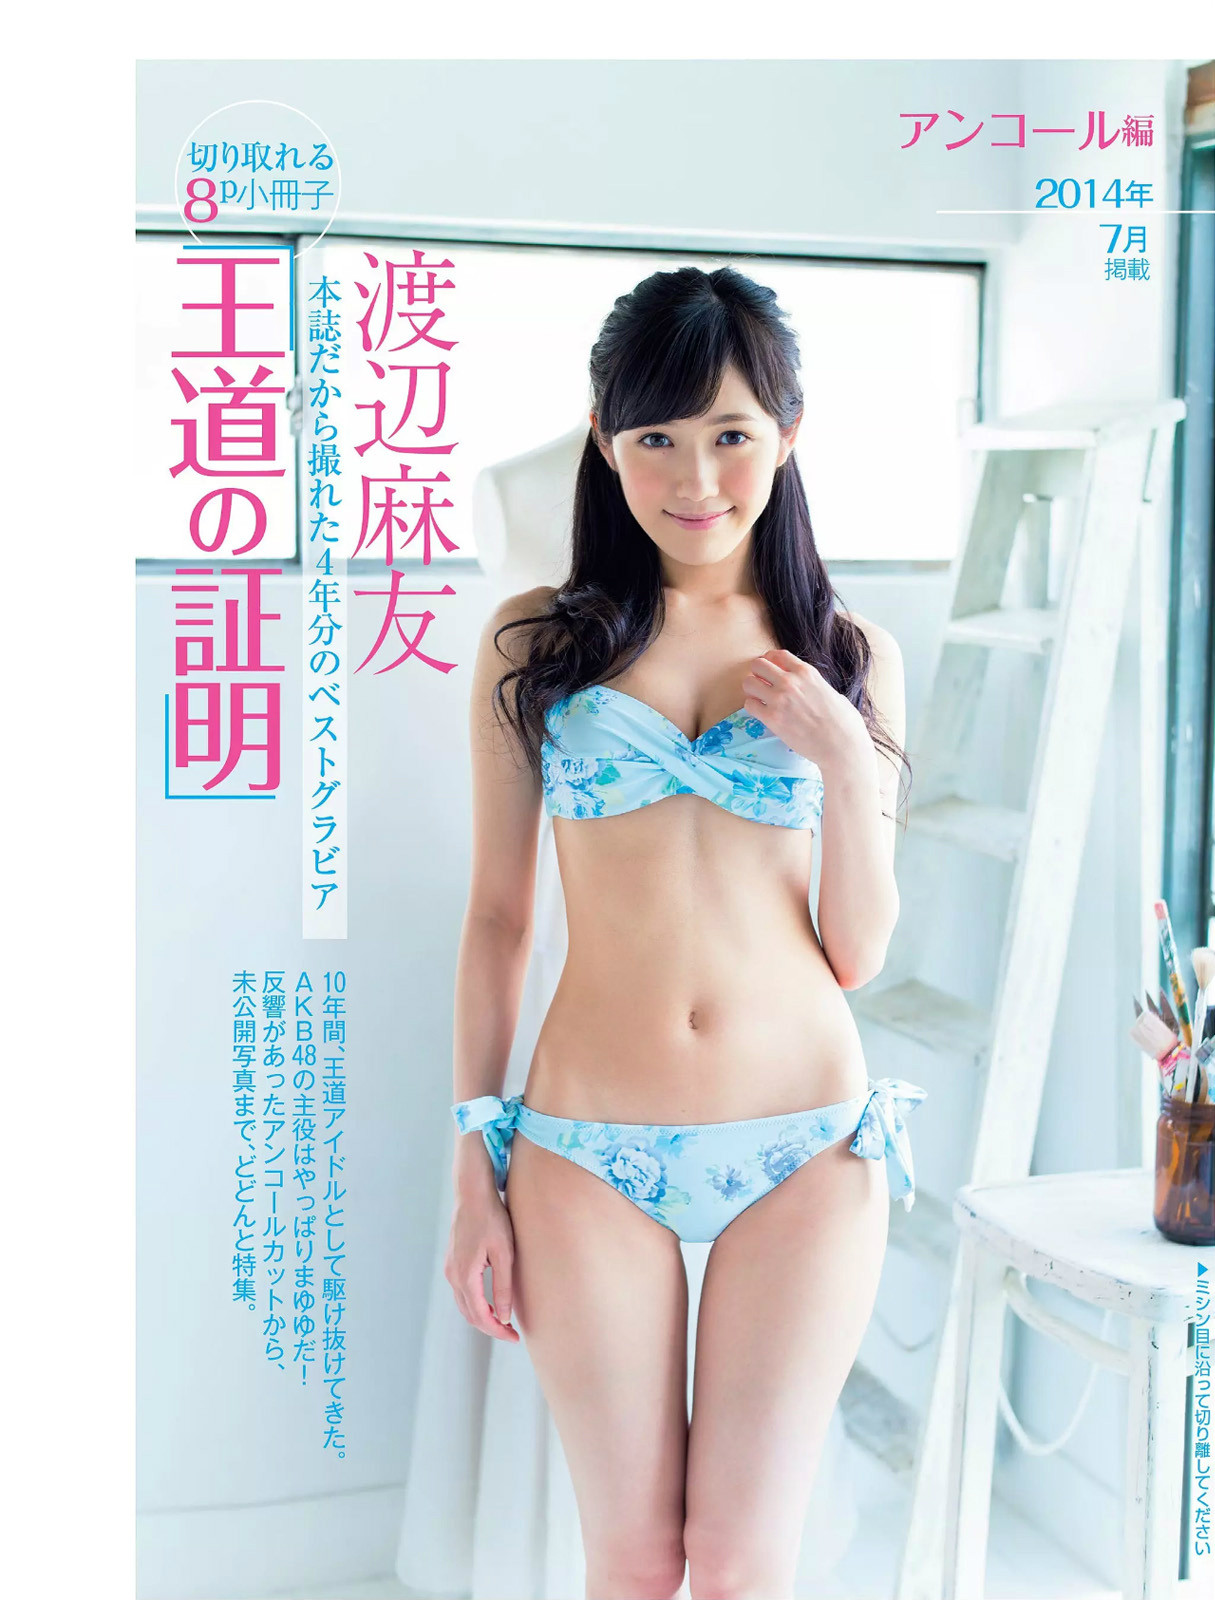 Japanese Nude Magazine 9